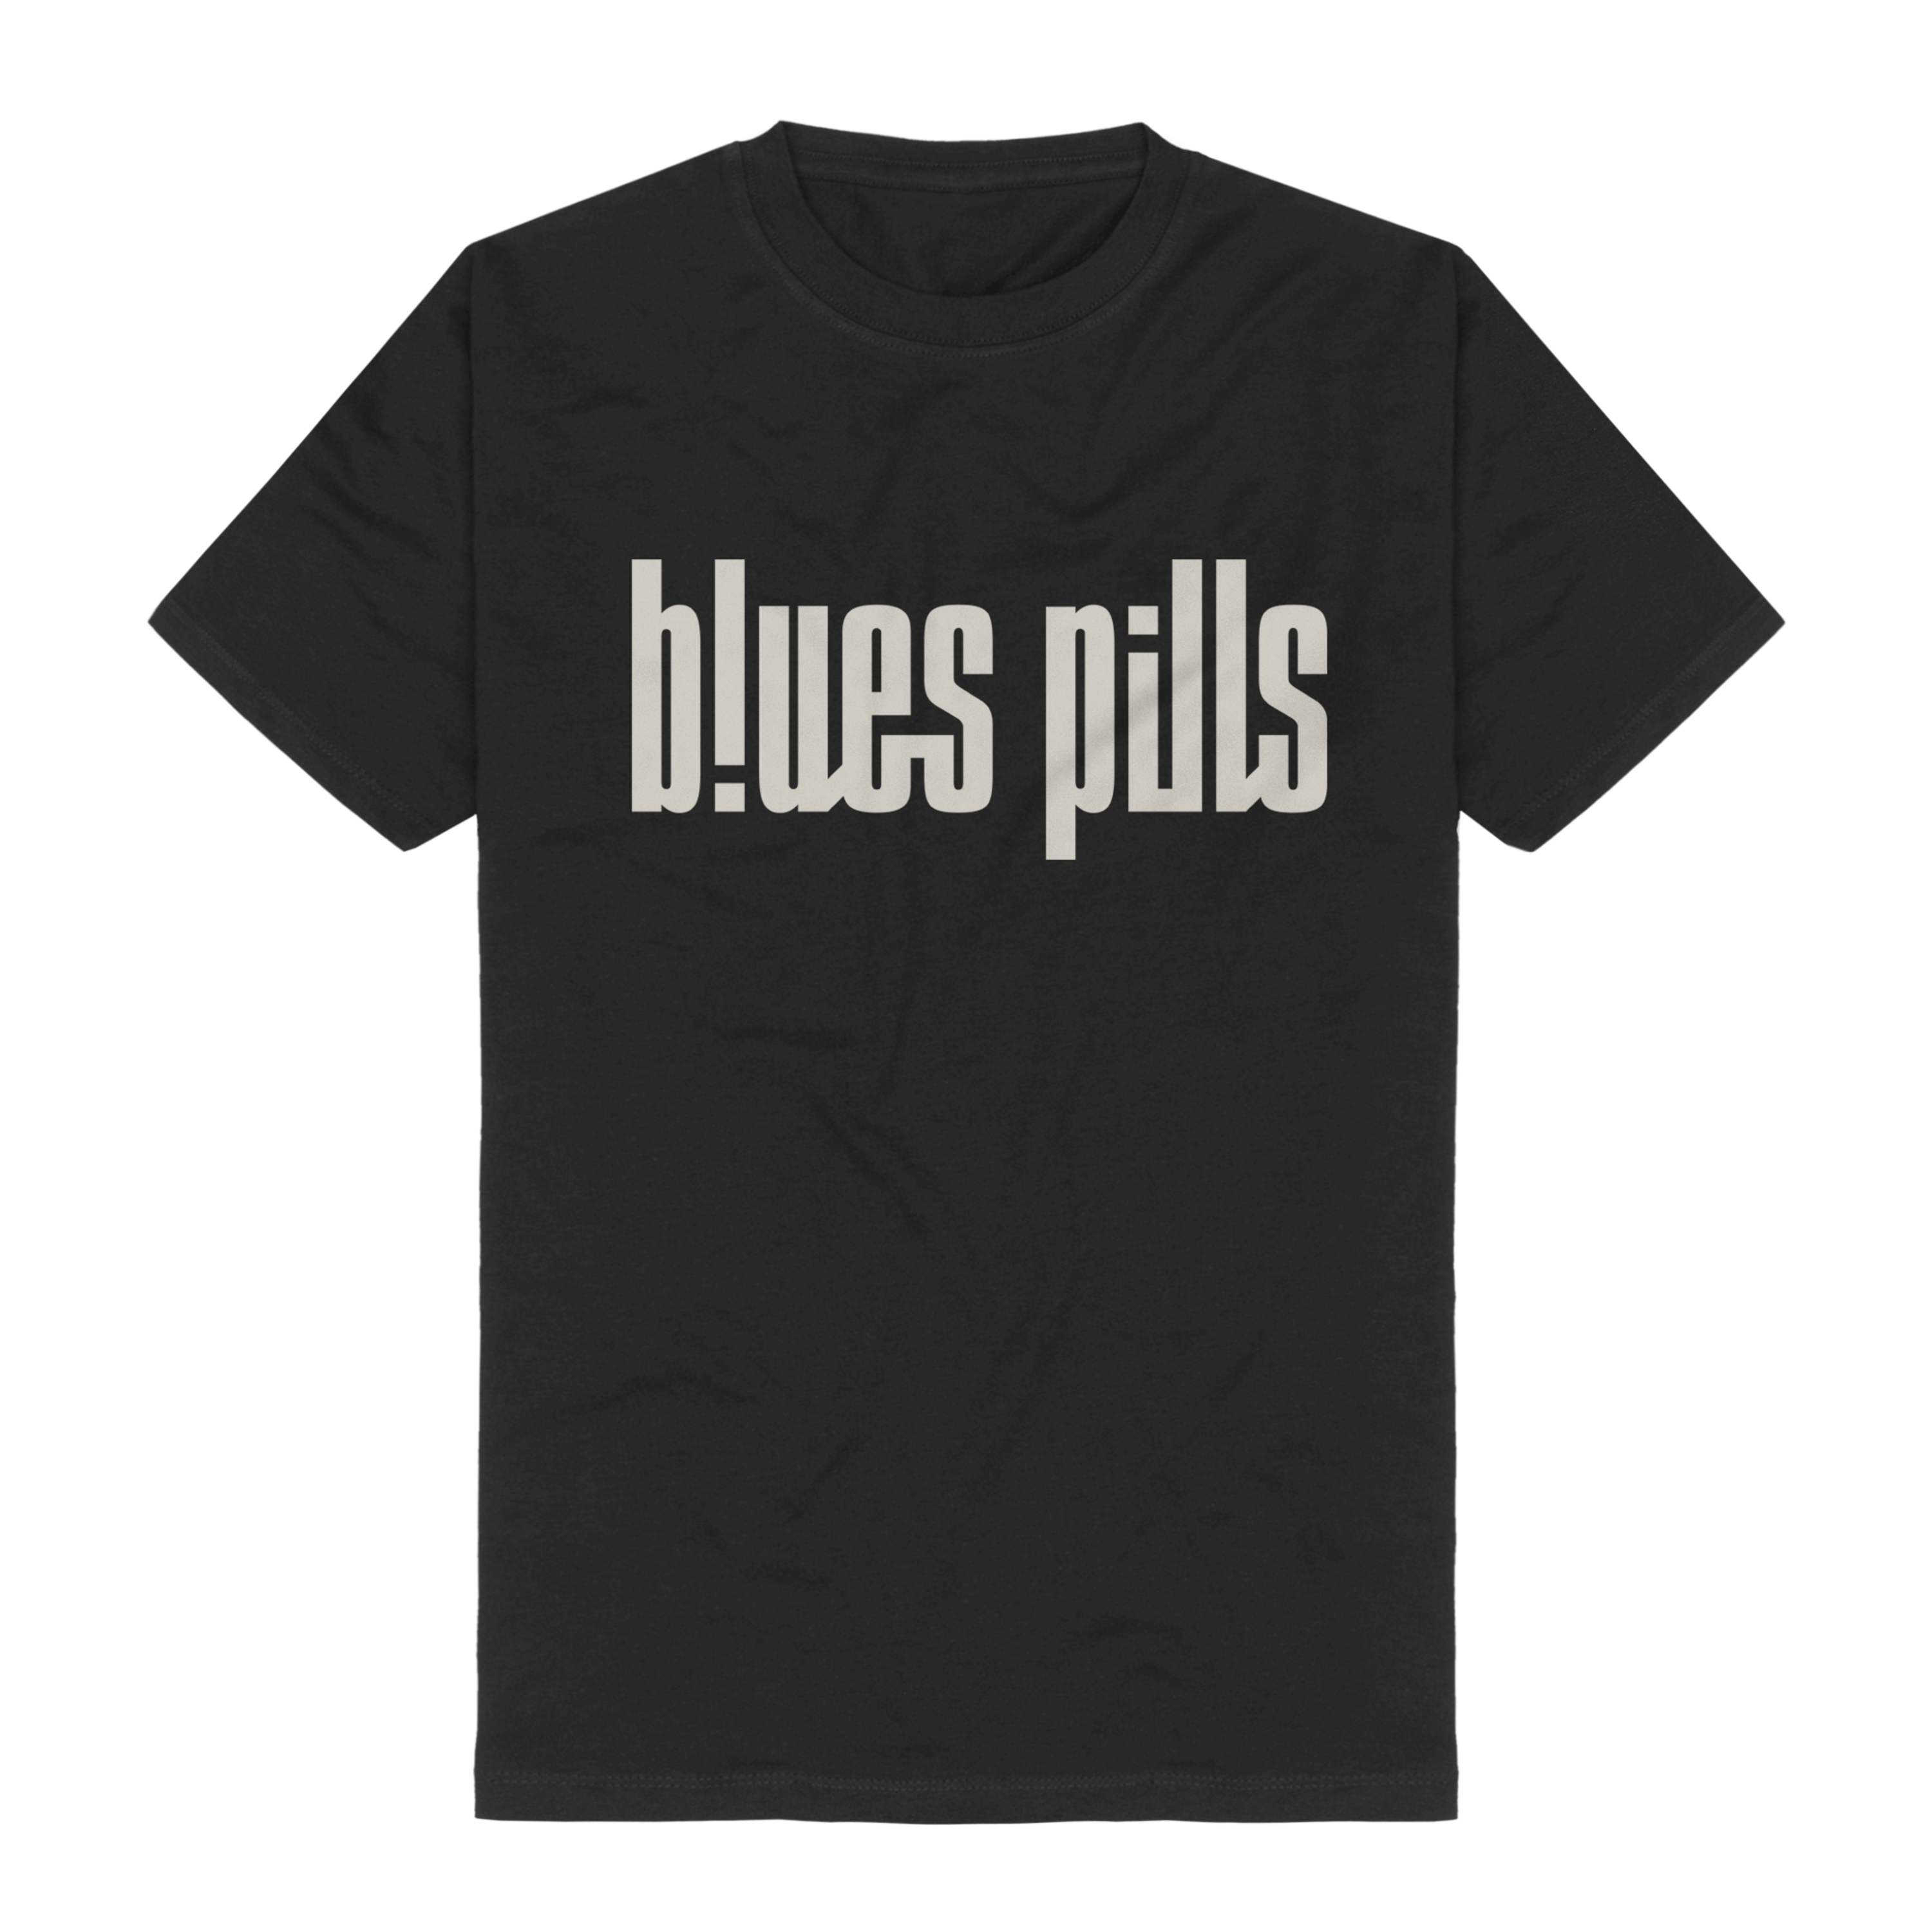 https://images.bravado.de/prod/product-assets/product-asset-data/blues-pills/blues-pills/products/132674/web/294915/image-thumb__294915__3000x3000_original/Blues-Pills-Discharge-Logo-T-Shirt-schwarz-132674-294915.png